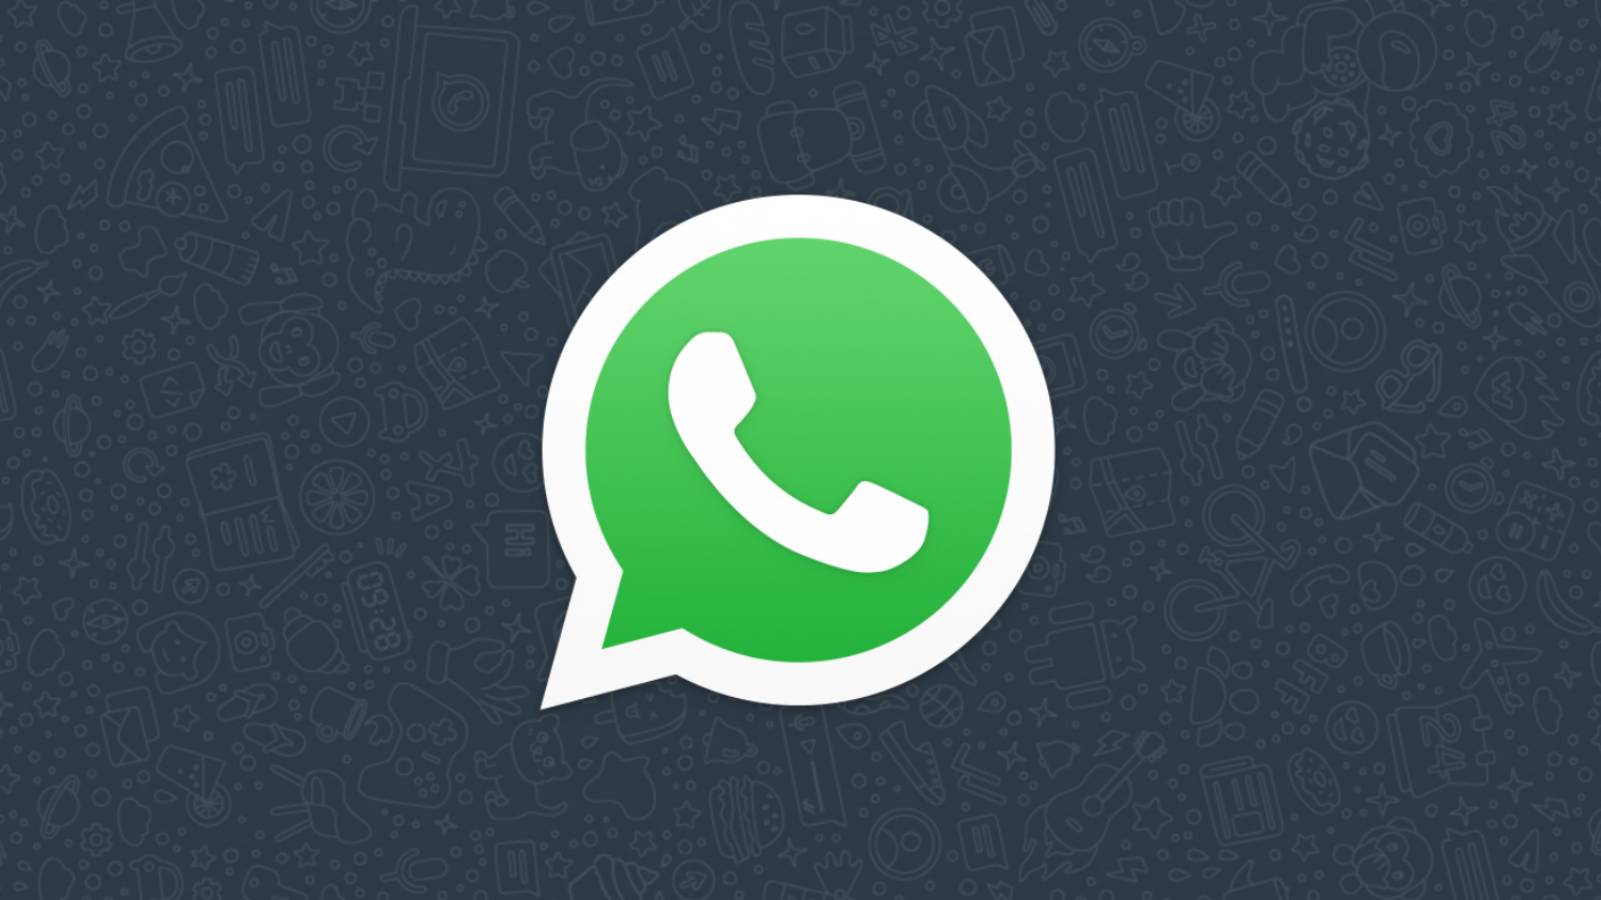 WhatsApp-Verkürzer